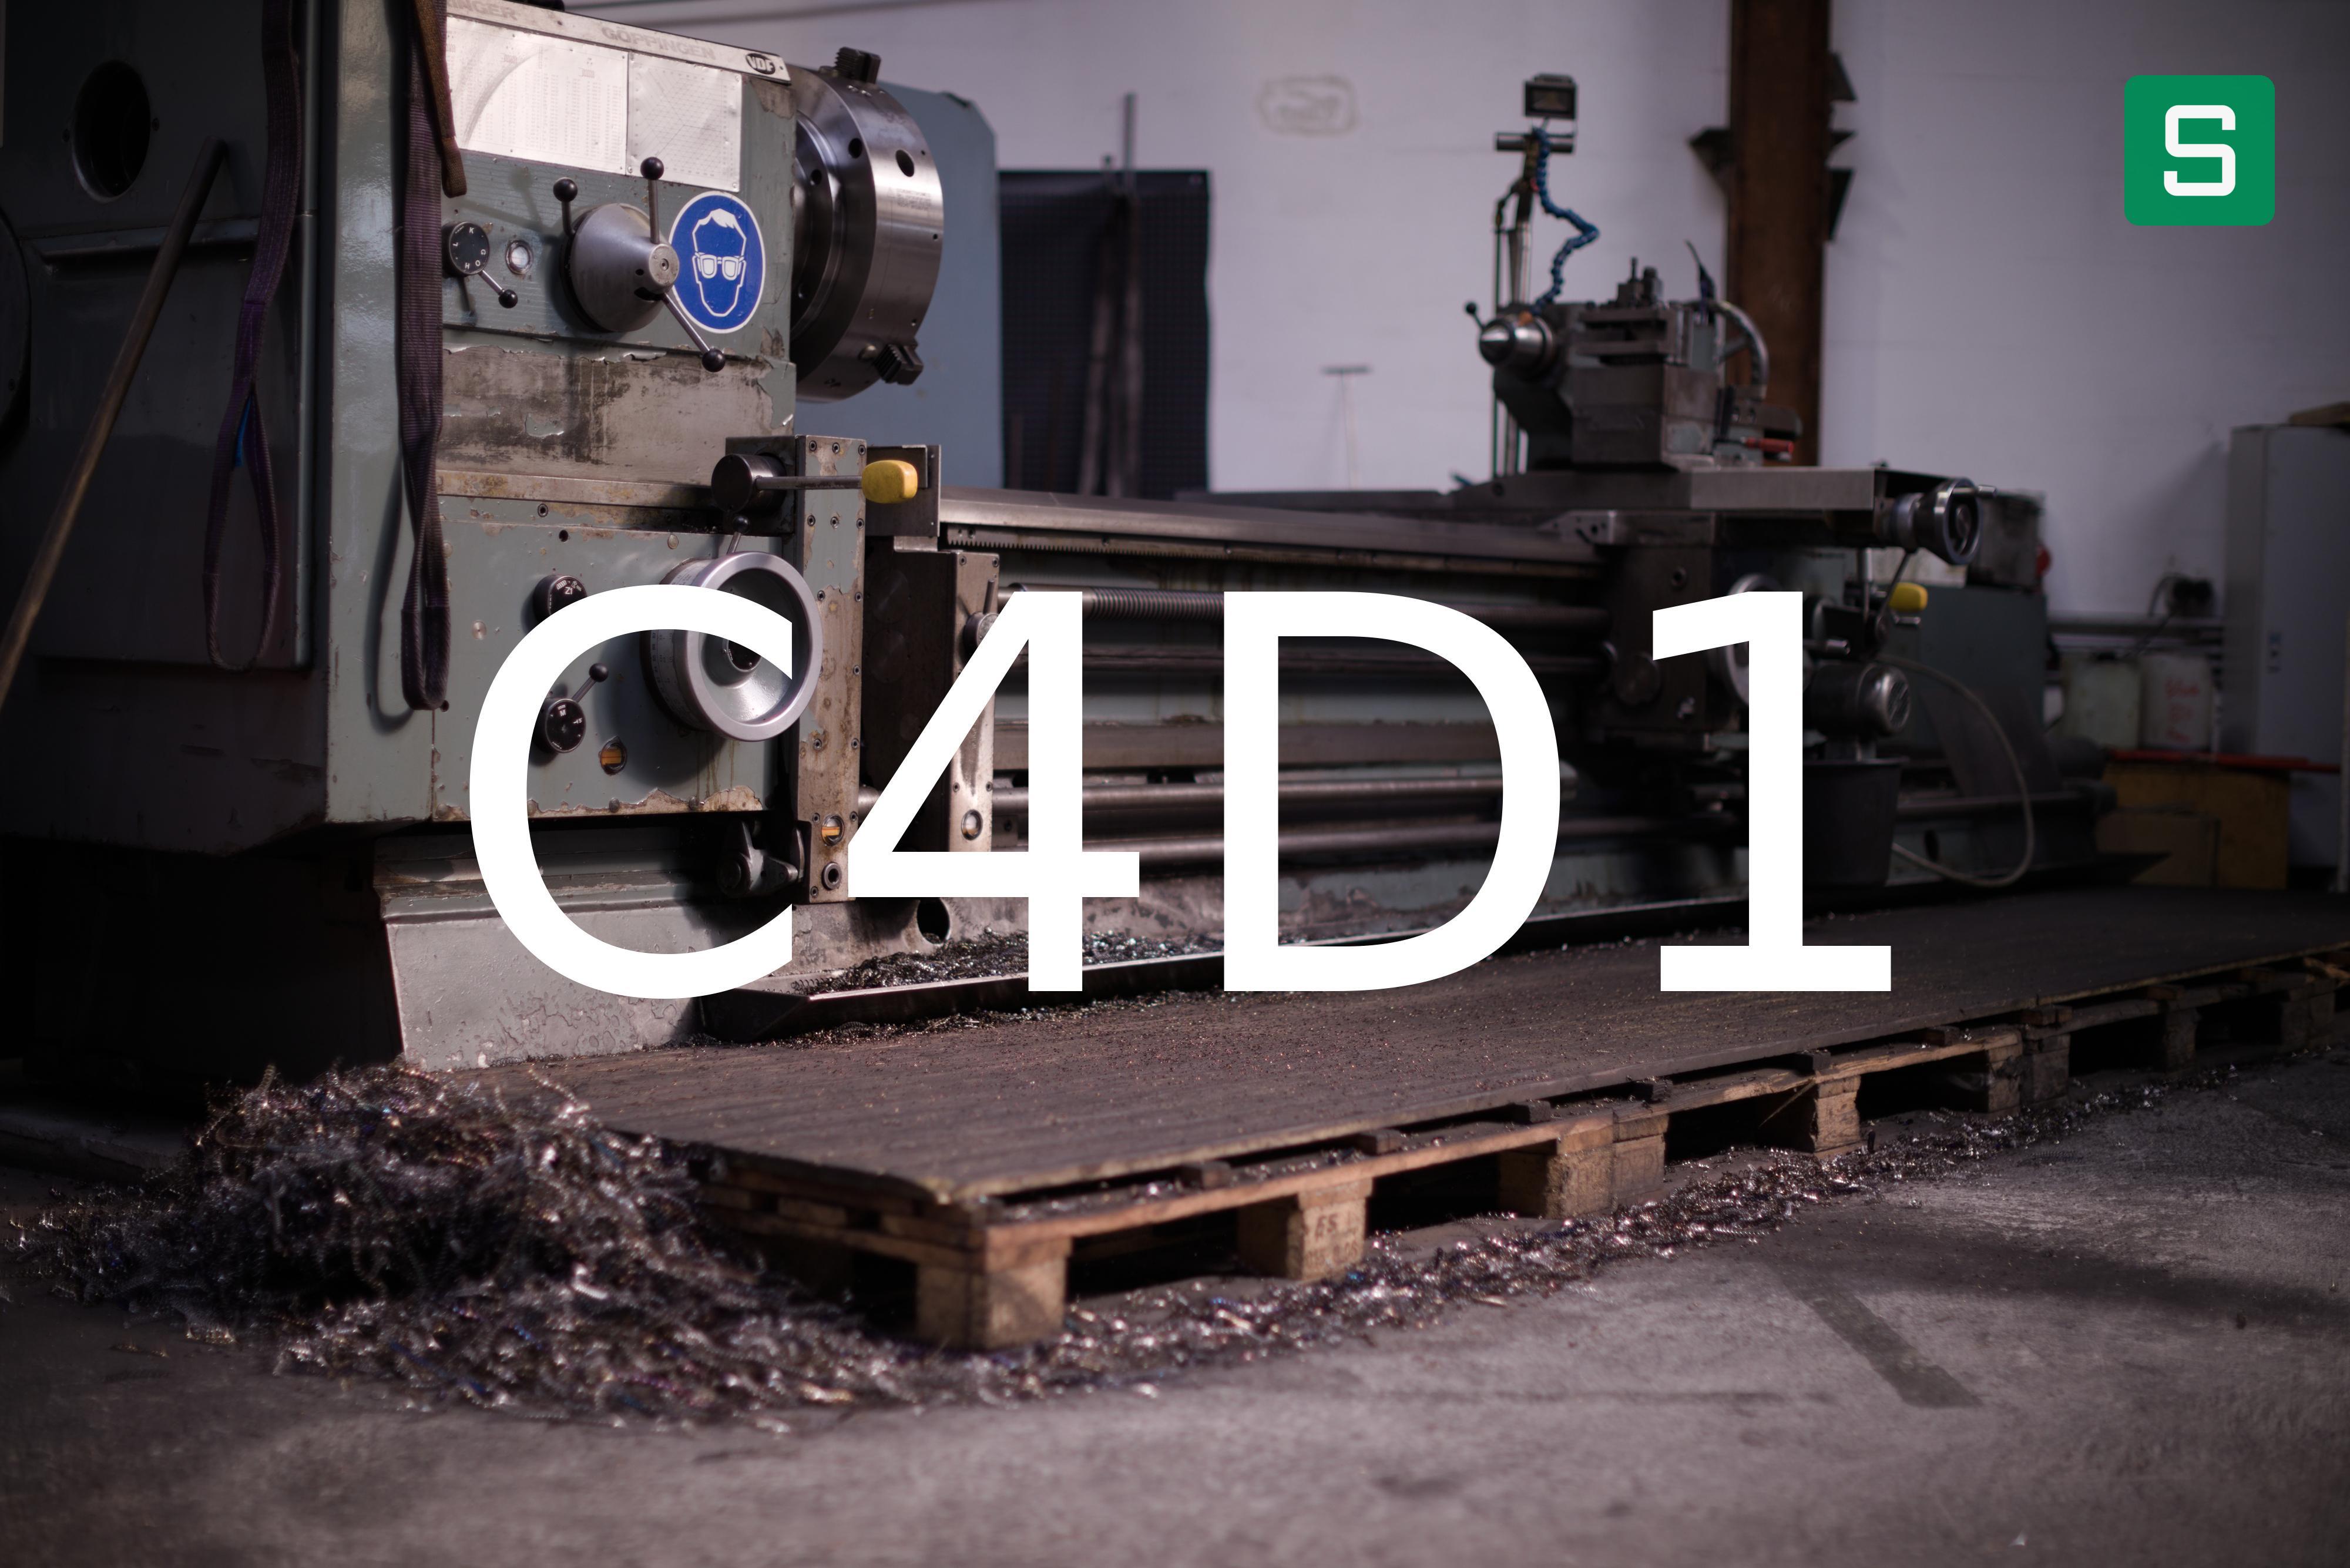 Stahlwerkstoff: C4D1